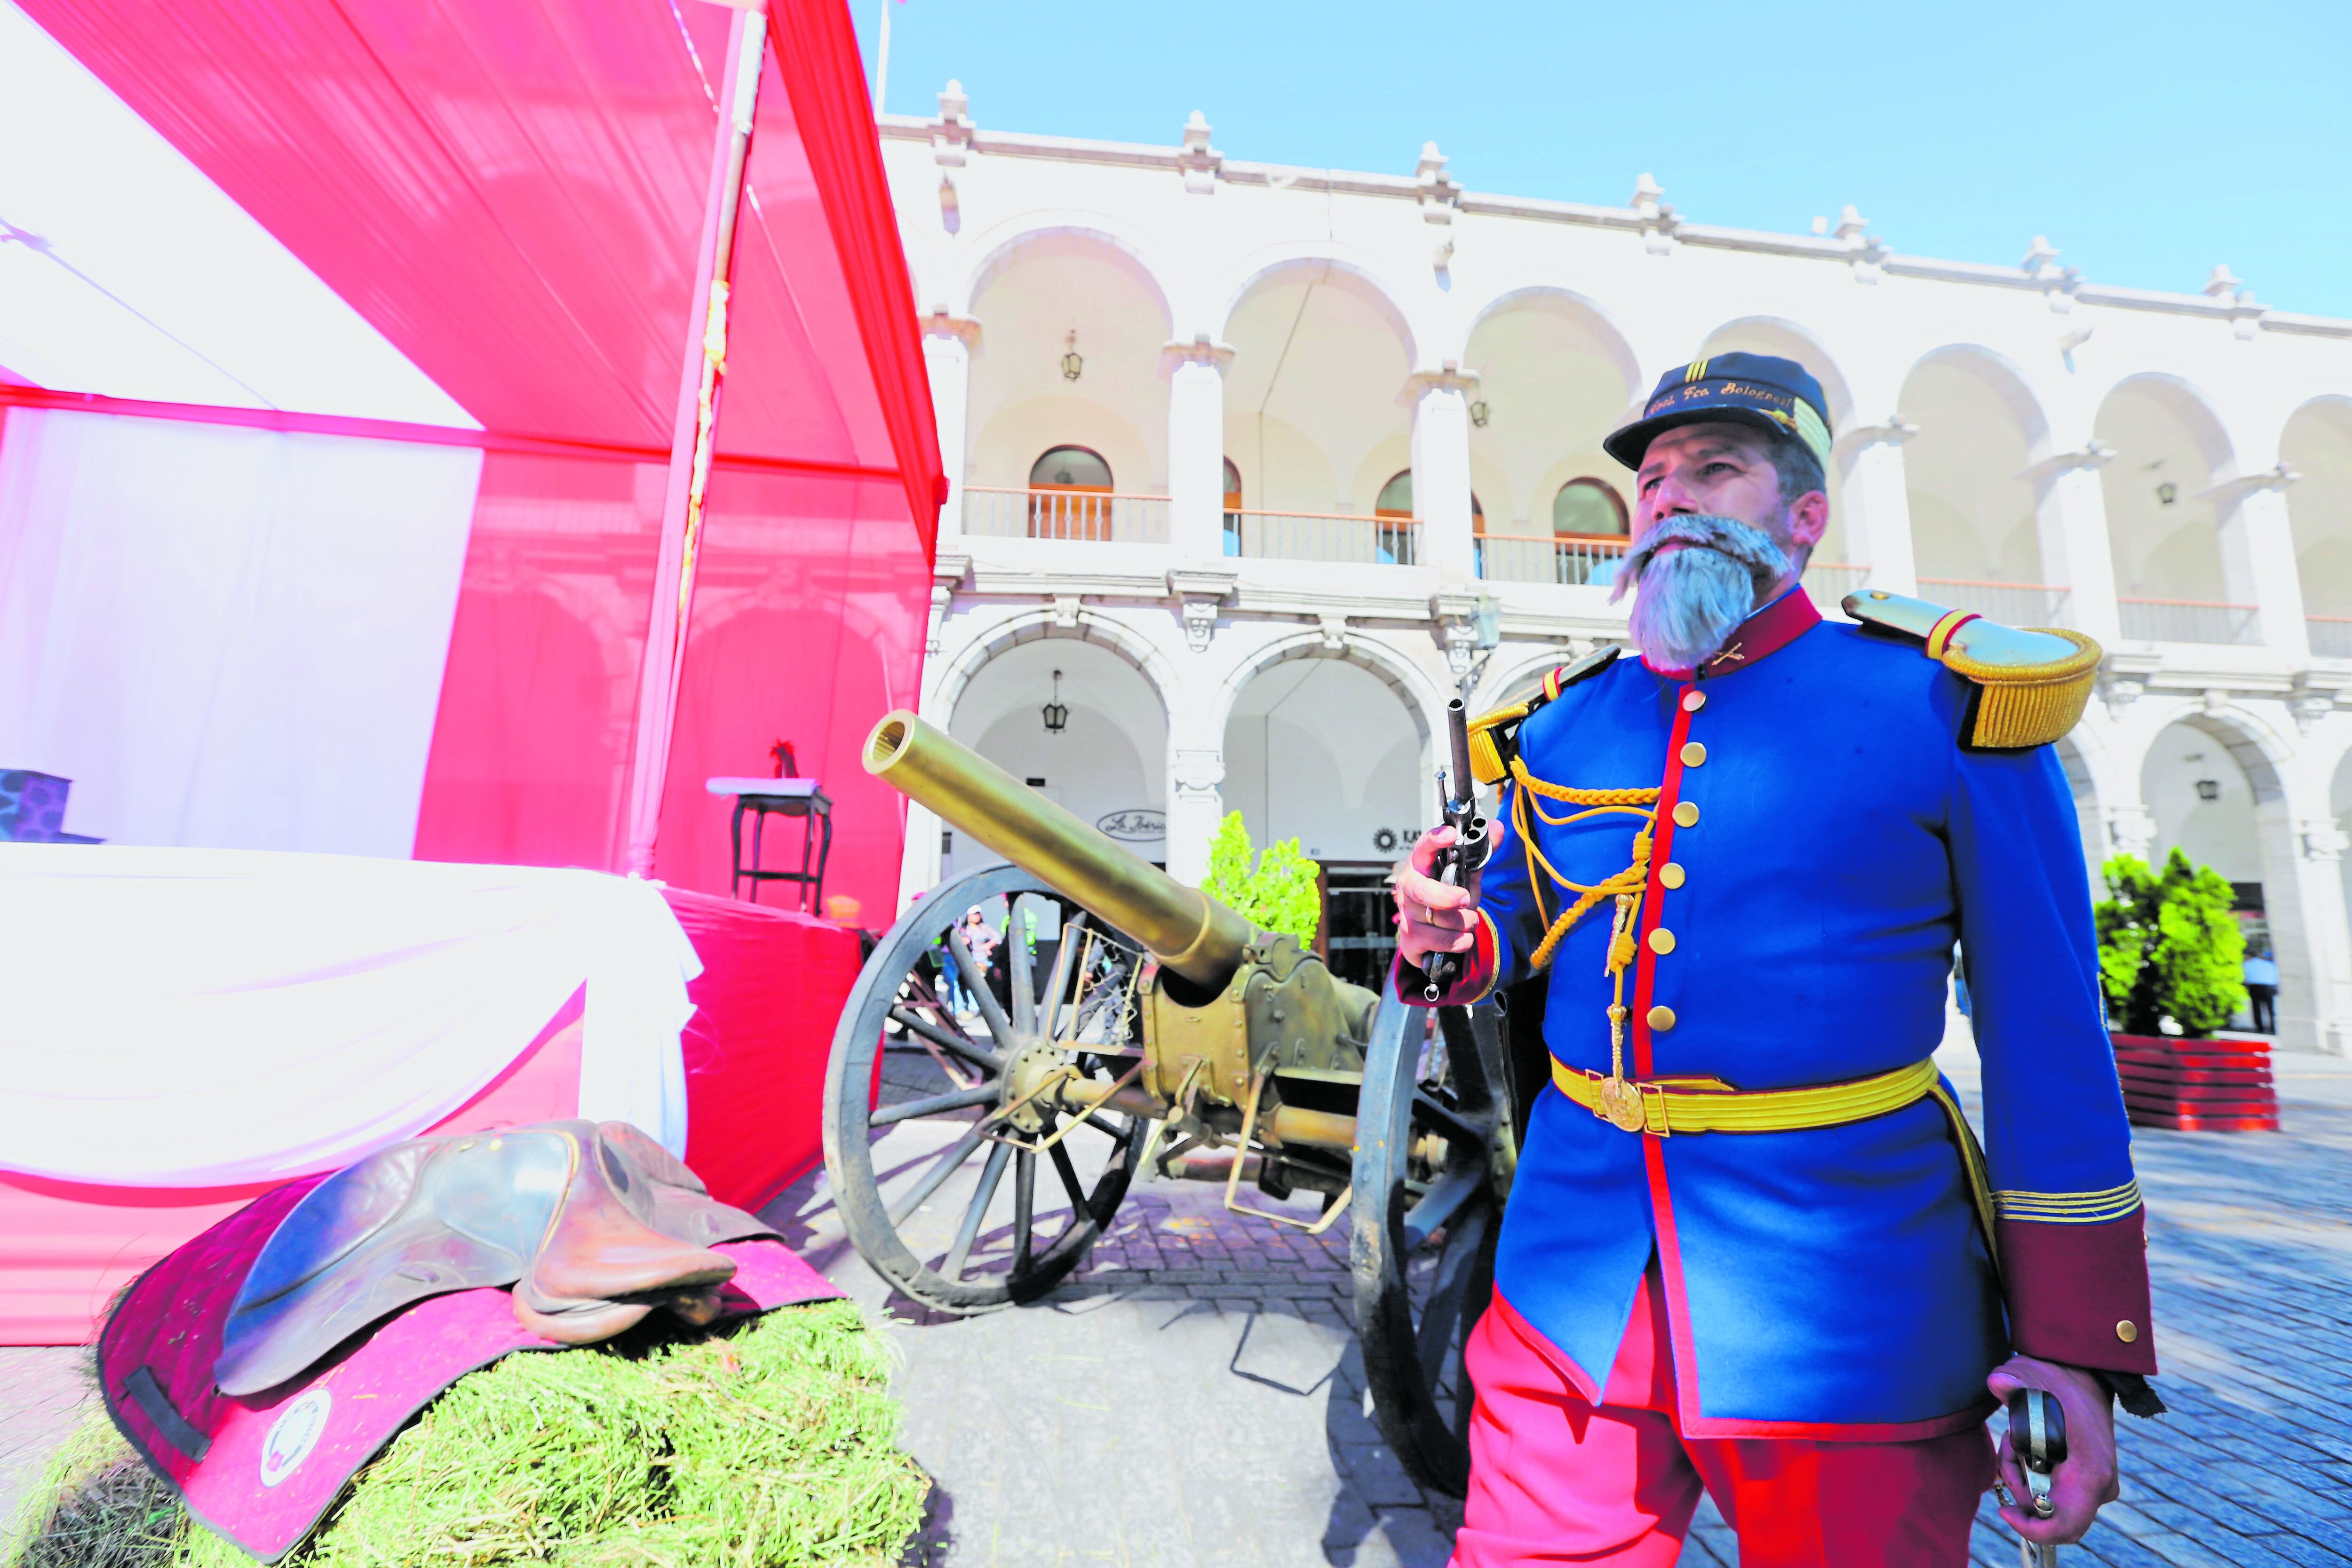 El Teniente Coronel orgulloso portar el uniforme del héroe Francisco Bolognesi. (Foto: Leonardo Cuito)